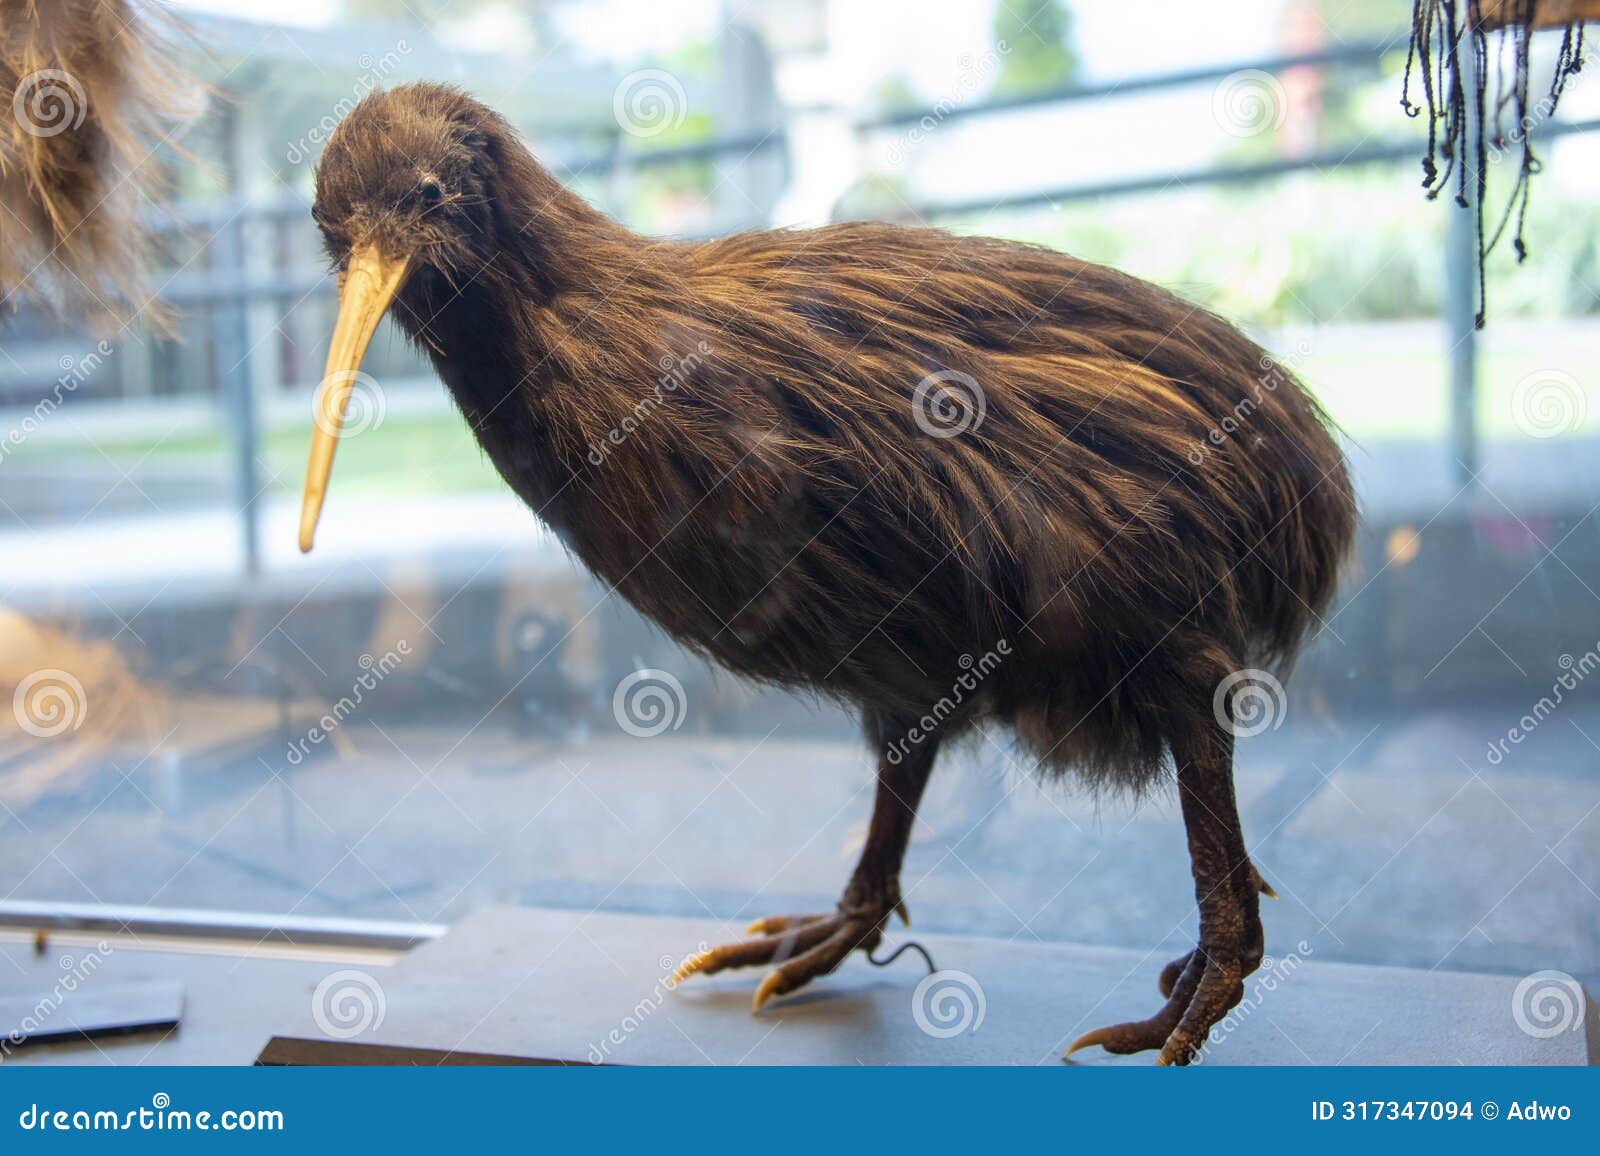 taxidermy kiwi bird